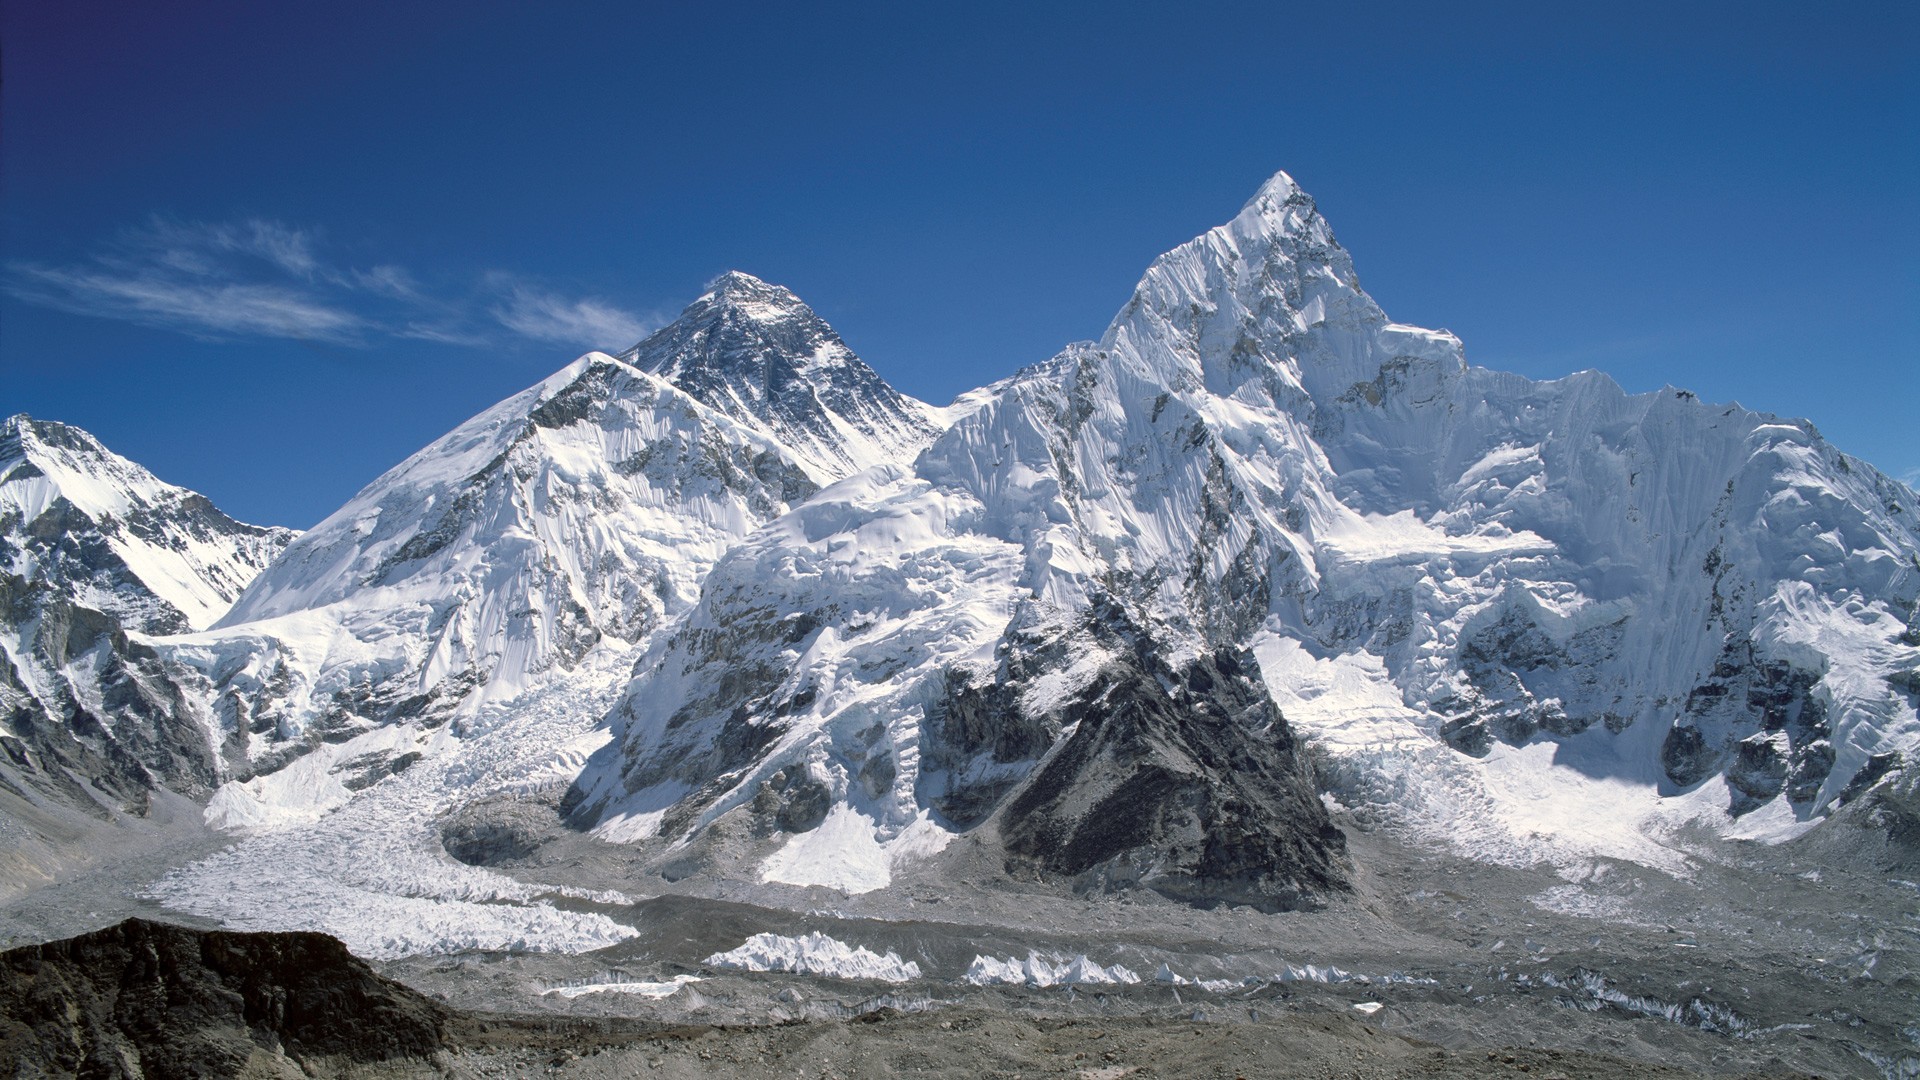 Everest Base Camp & Kala Pattar Trek